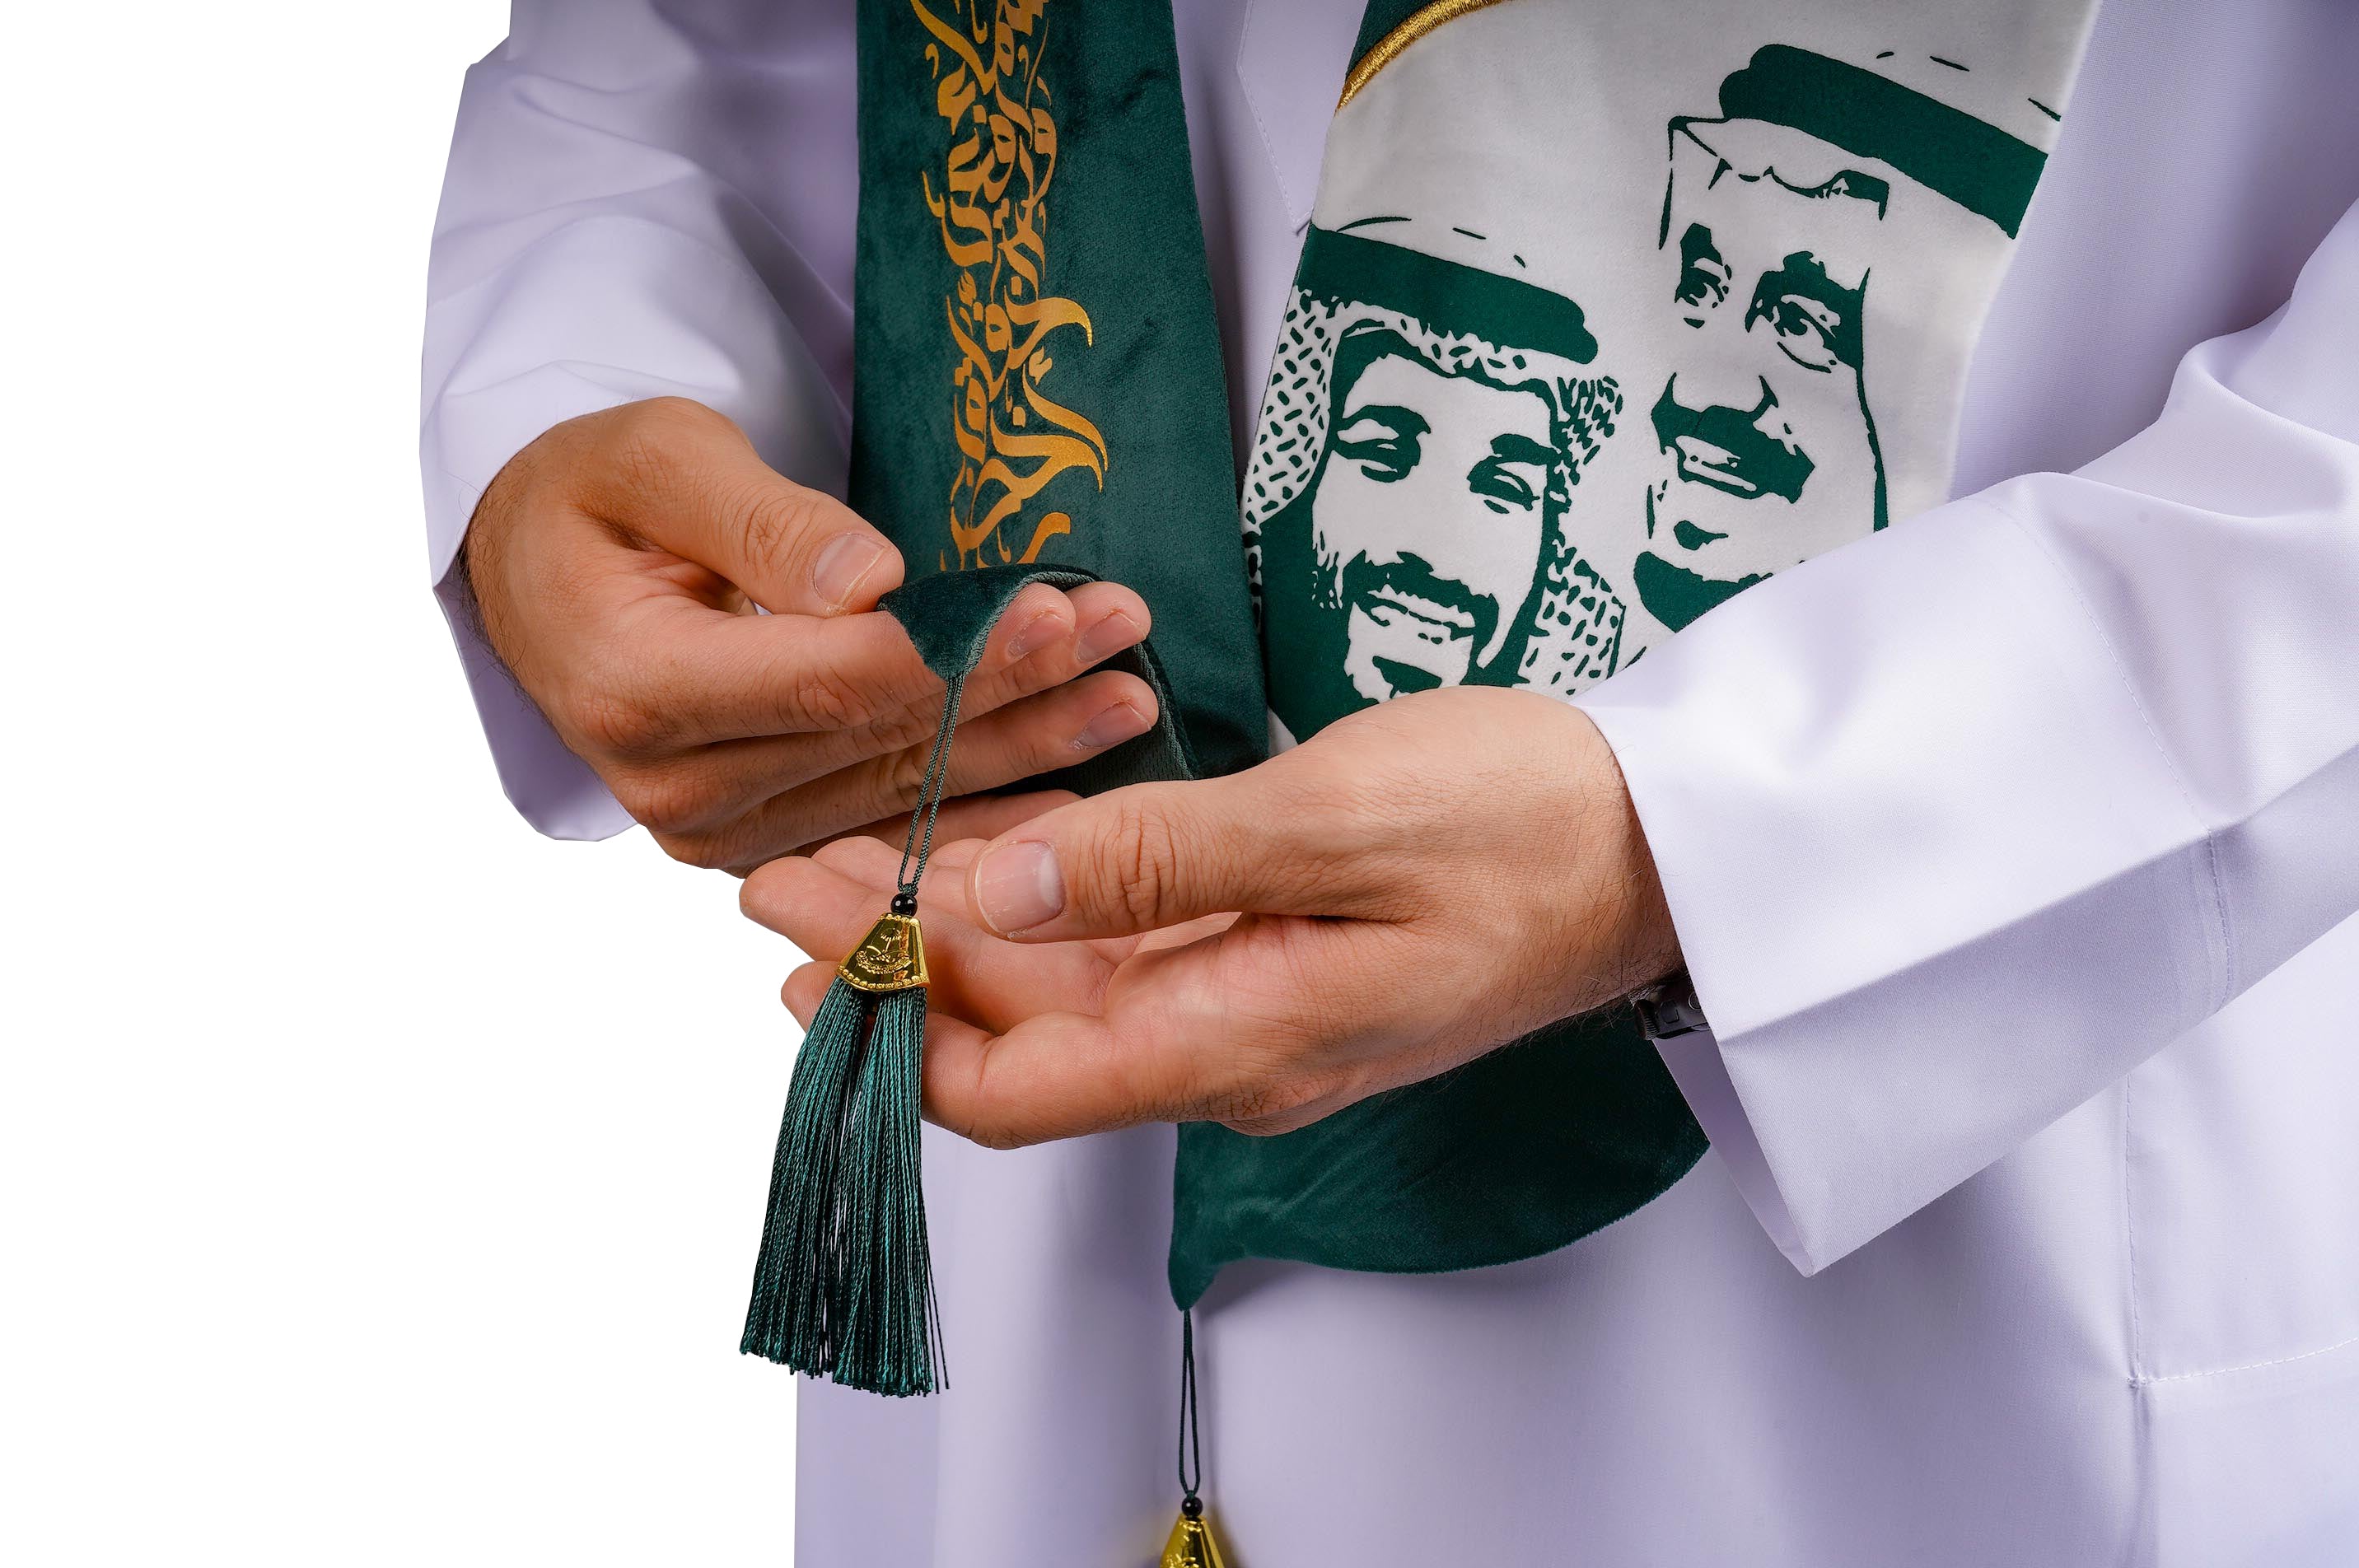 روفاتي وشاح المملكة العربية السعودية منحني أخضر وأبيض